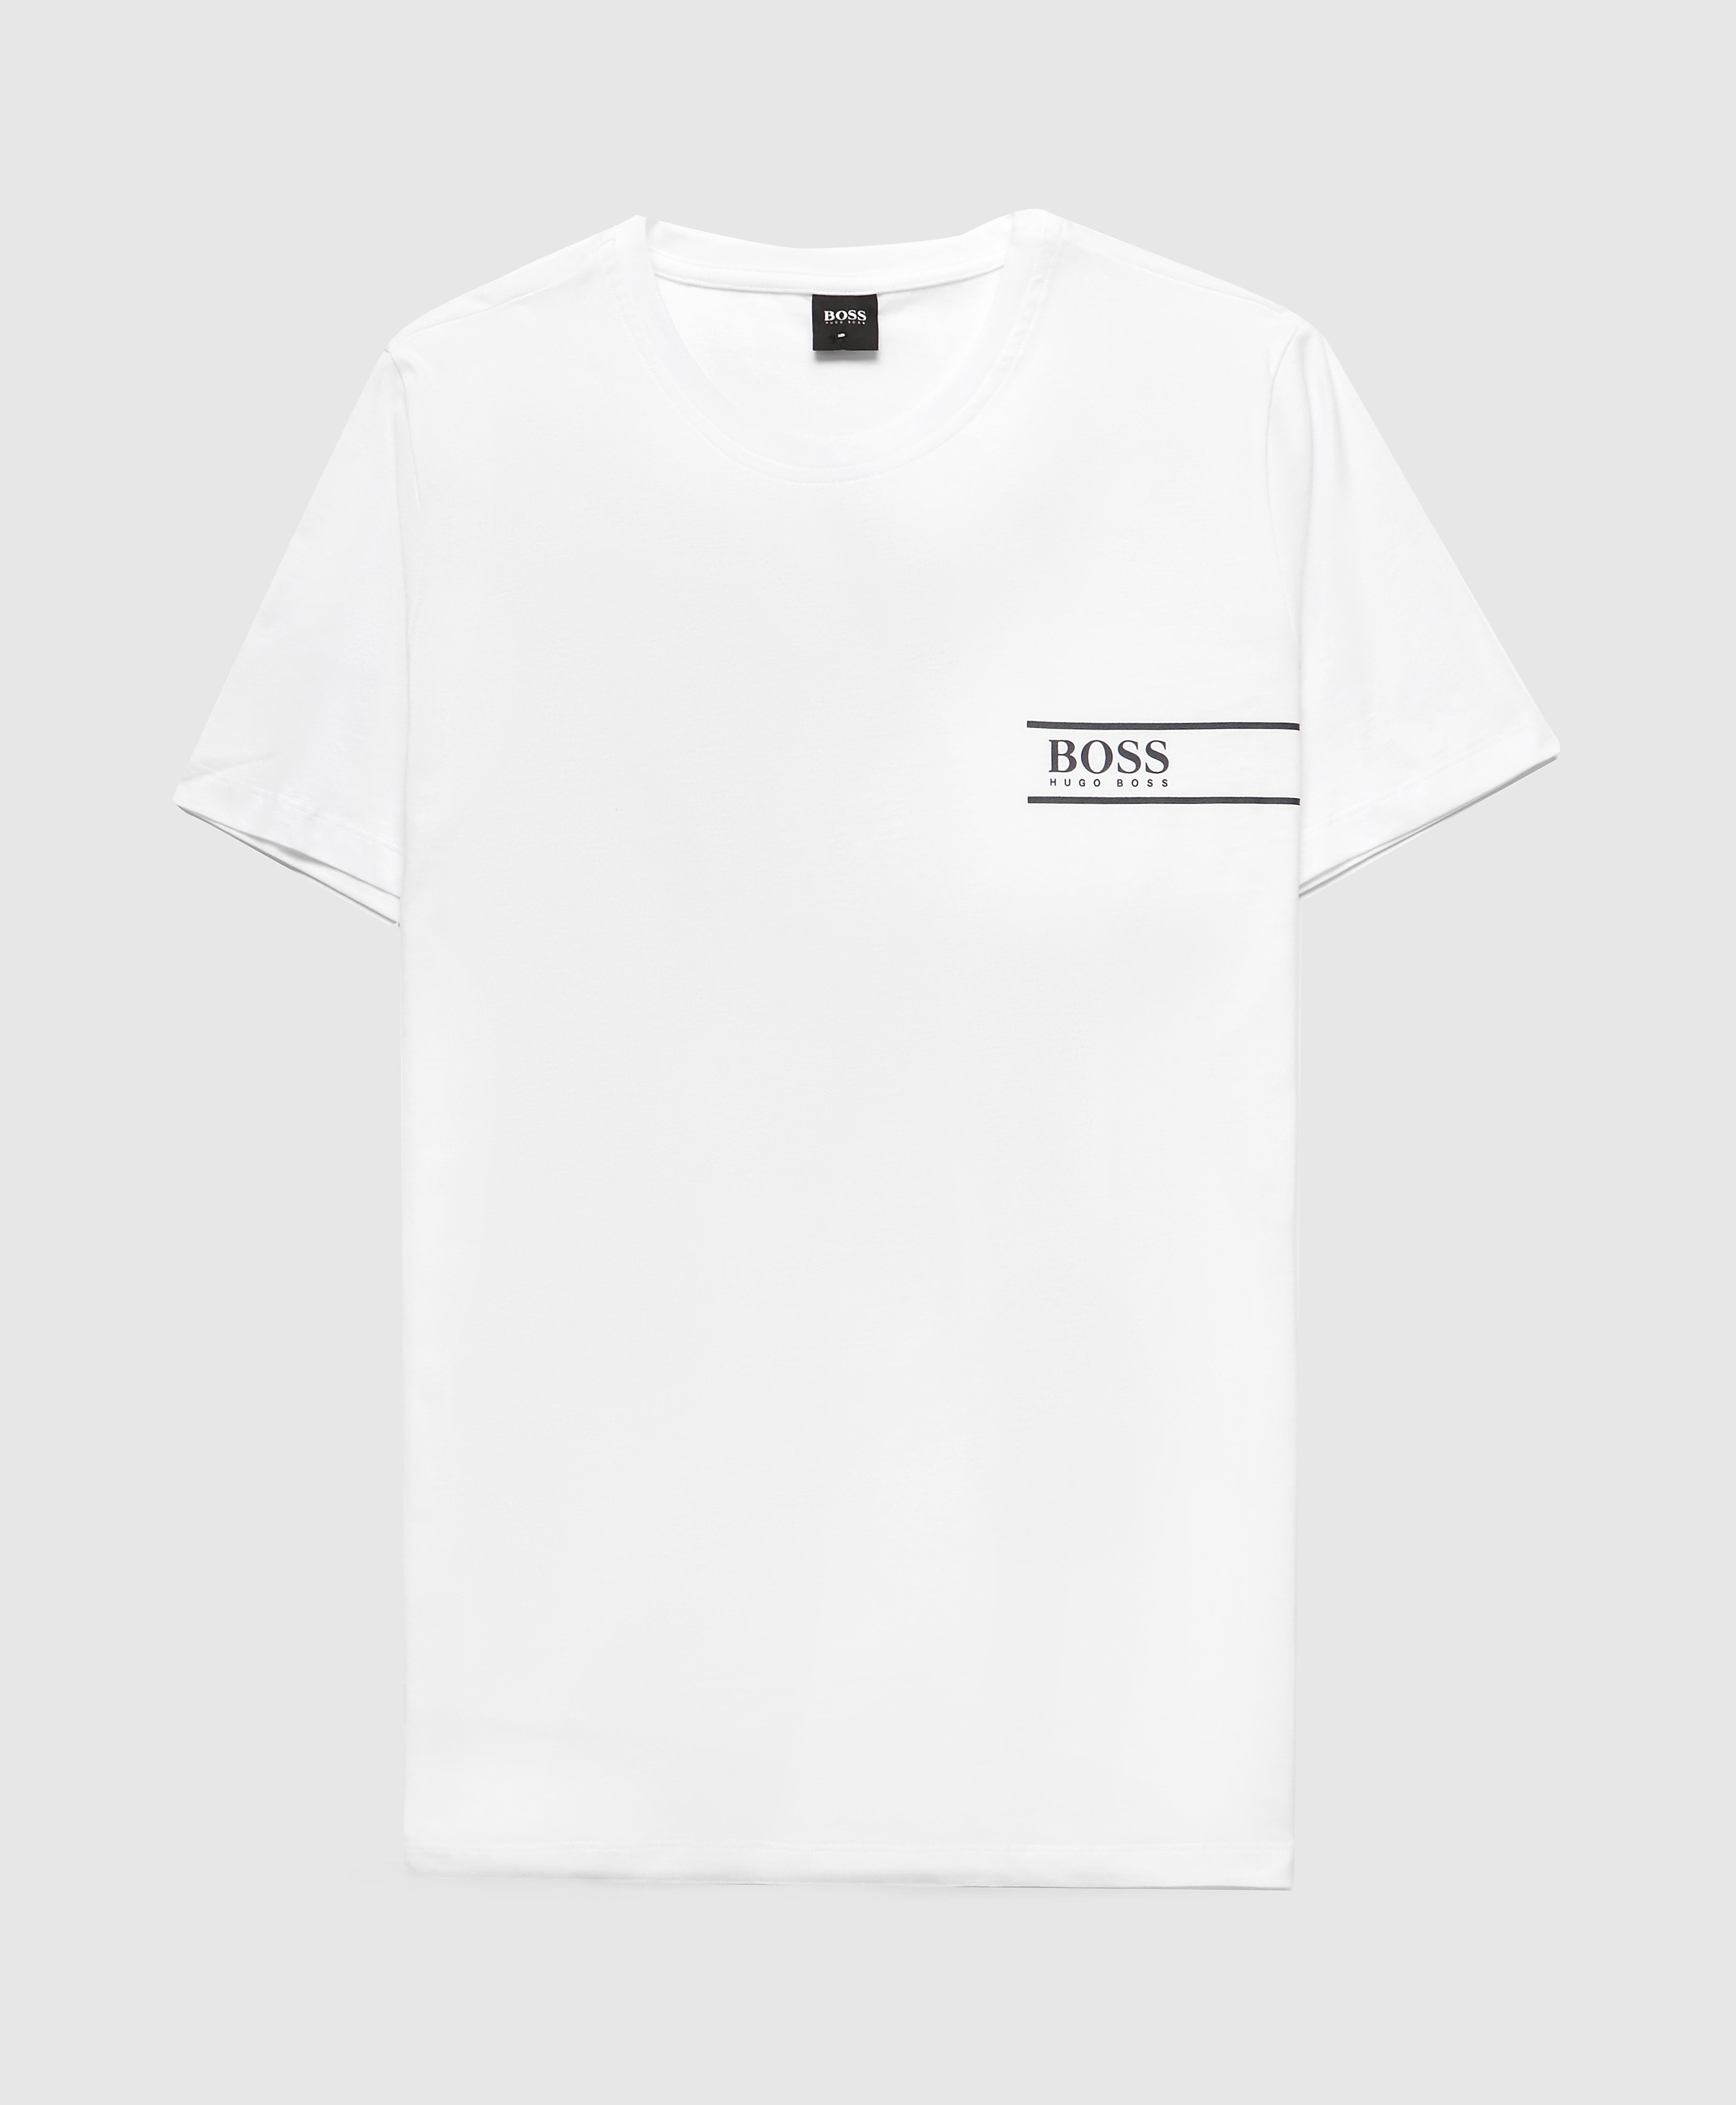 Men's BOSS Chest Logo T-Shirt - White/Black, White/Black